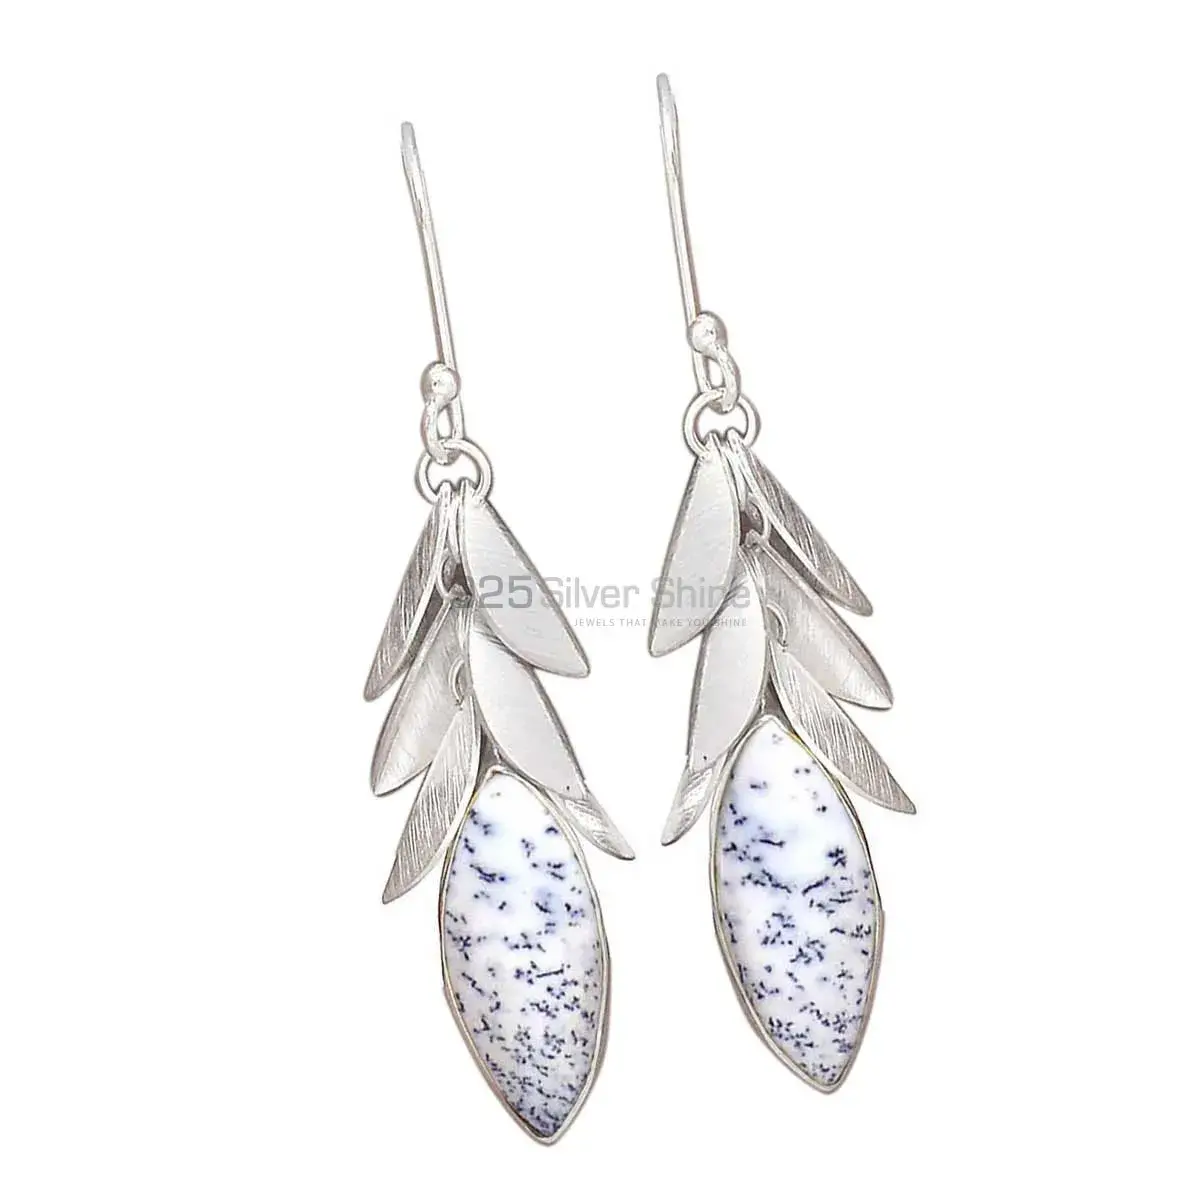 Unique 925 Sterling Silver Earrings Wholesaler In Dendritic Opal Gemstone Jewelry 925SE3029